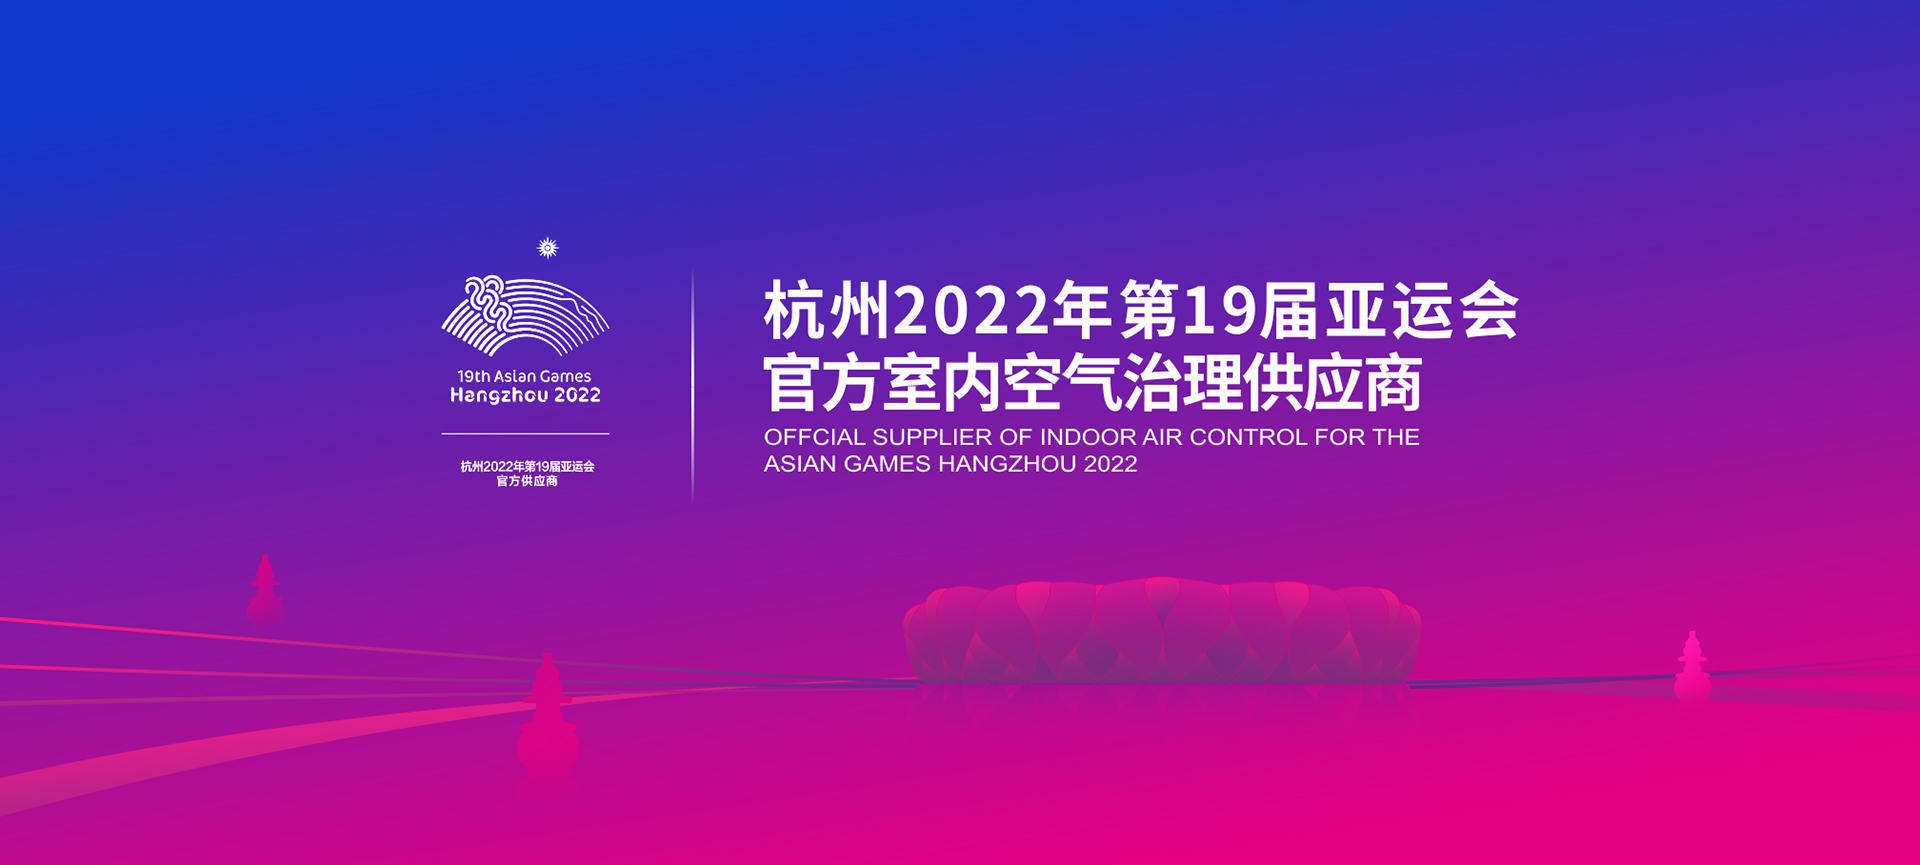 2022年亞運會官方室內空氣治理供應商